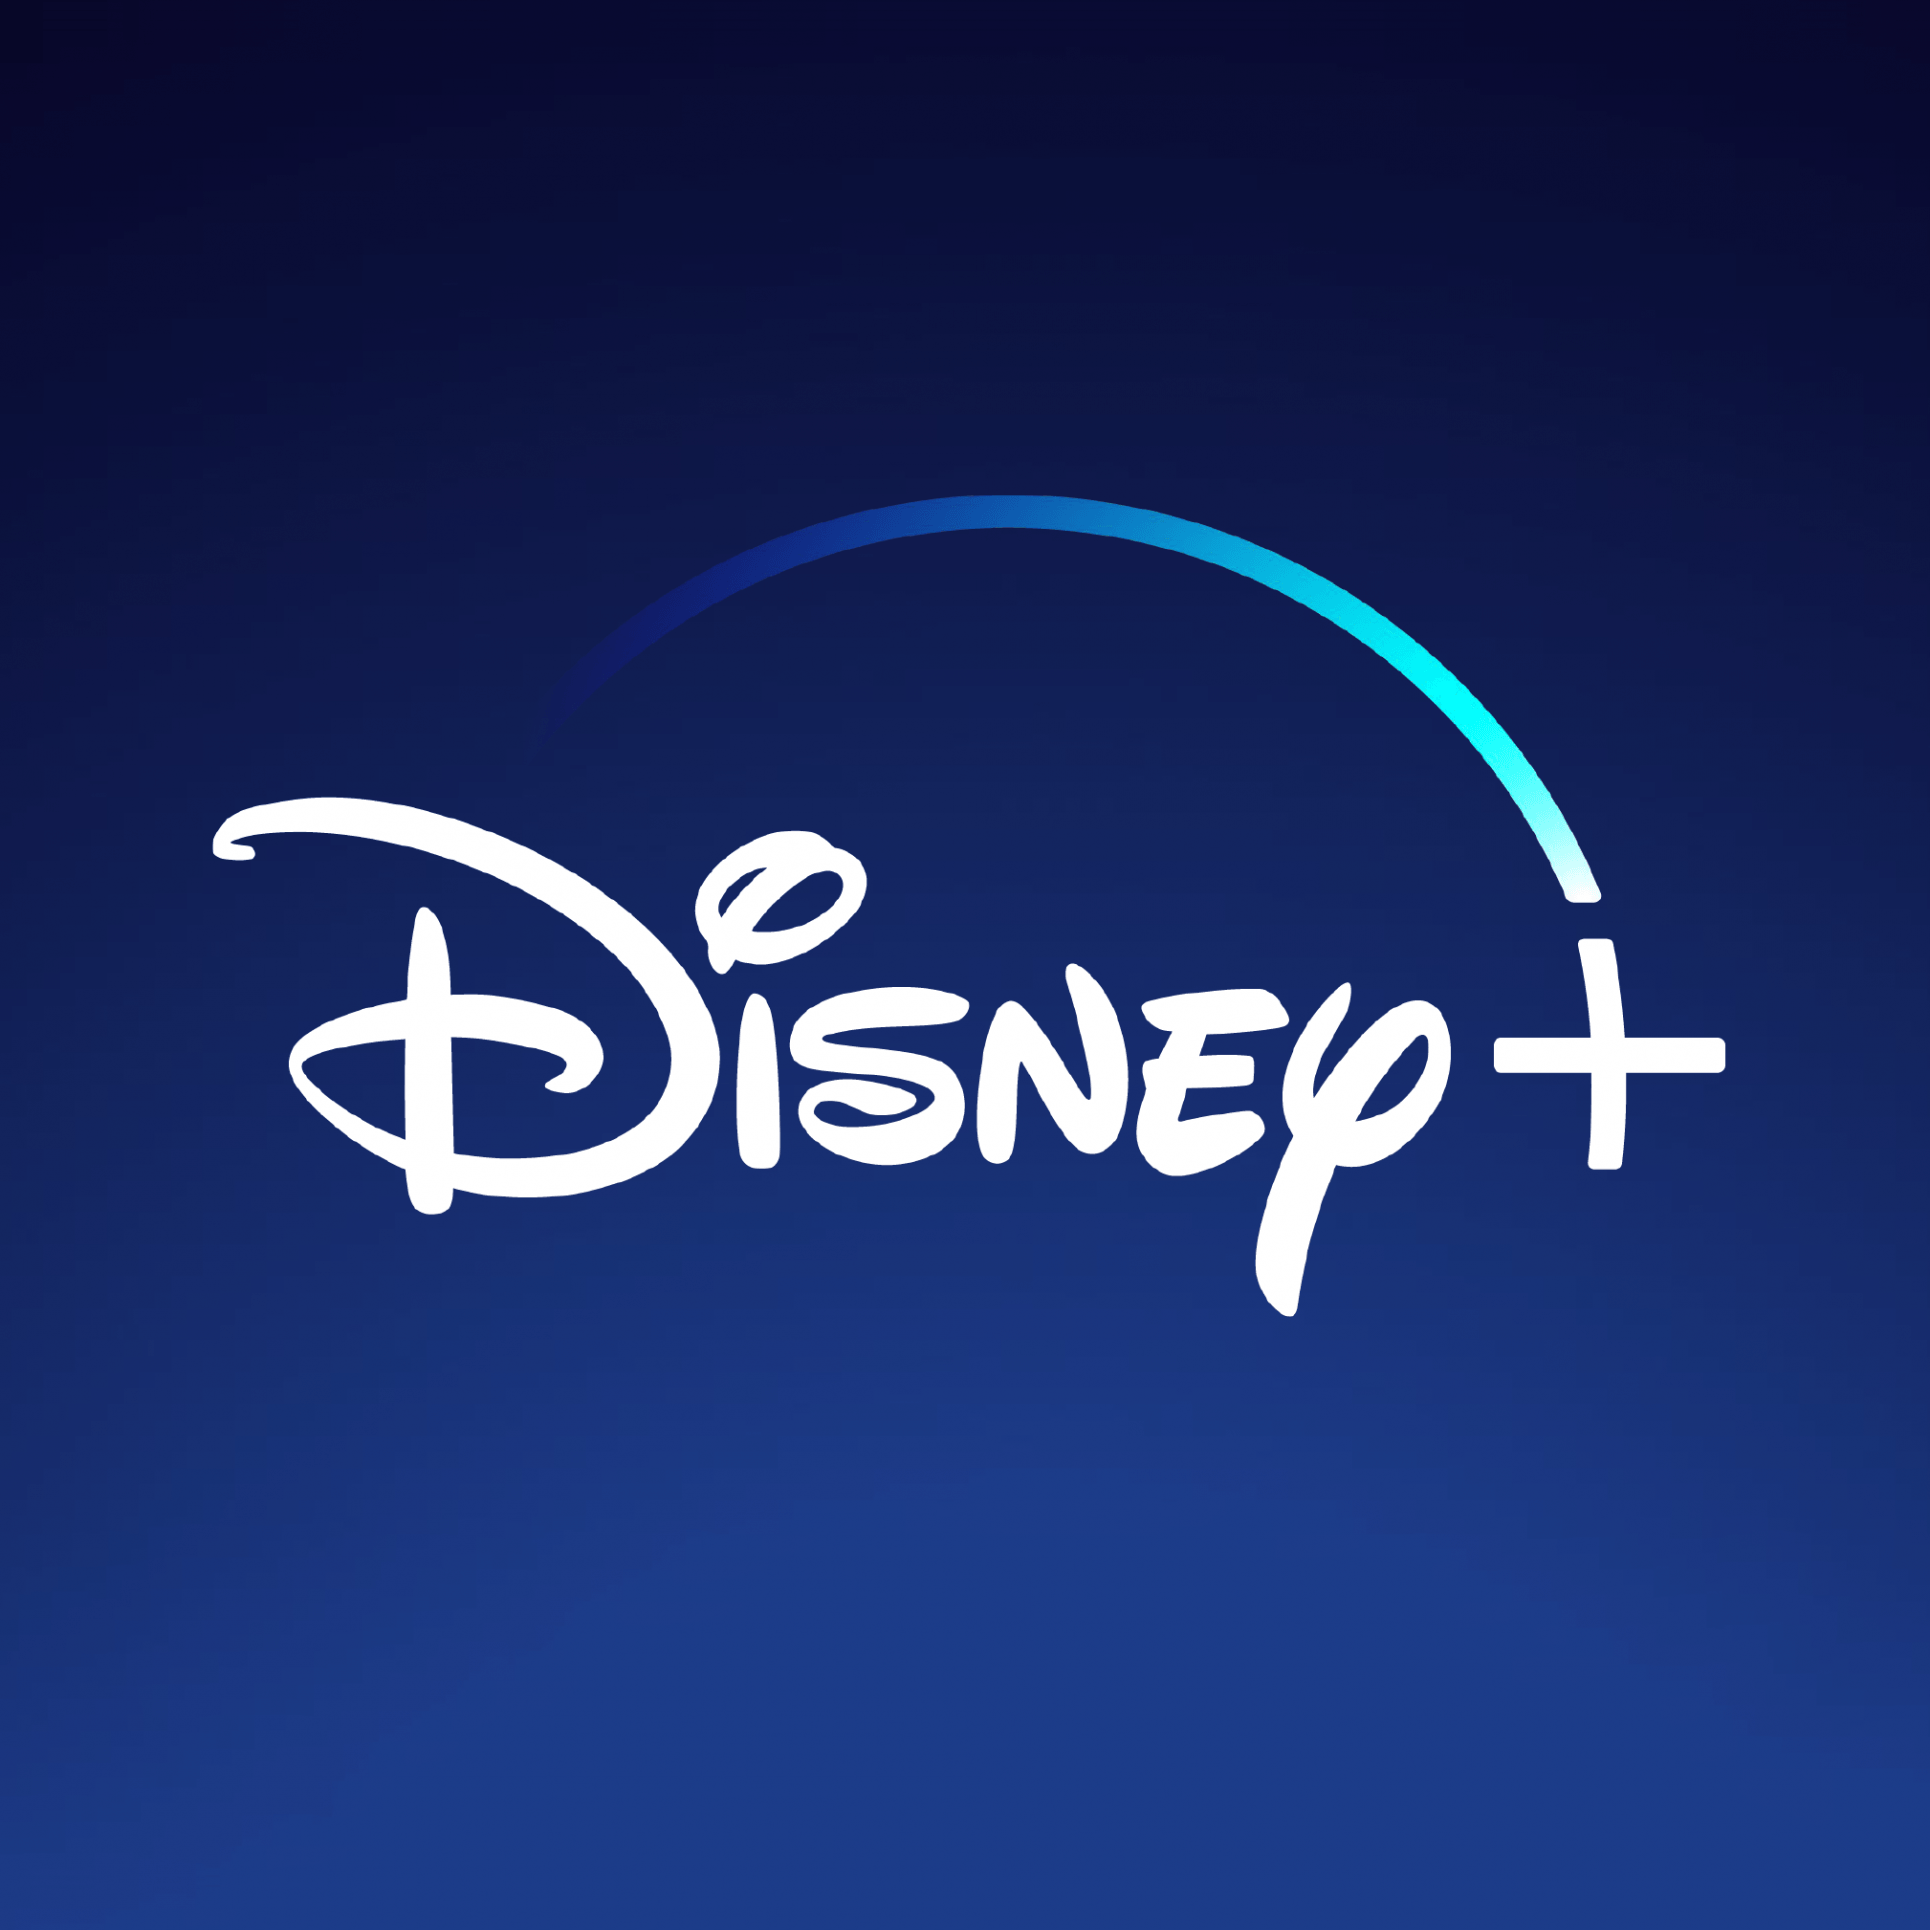 Disney+ presenta problemas técnicos en su lanzamiento